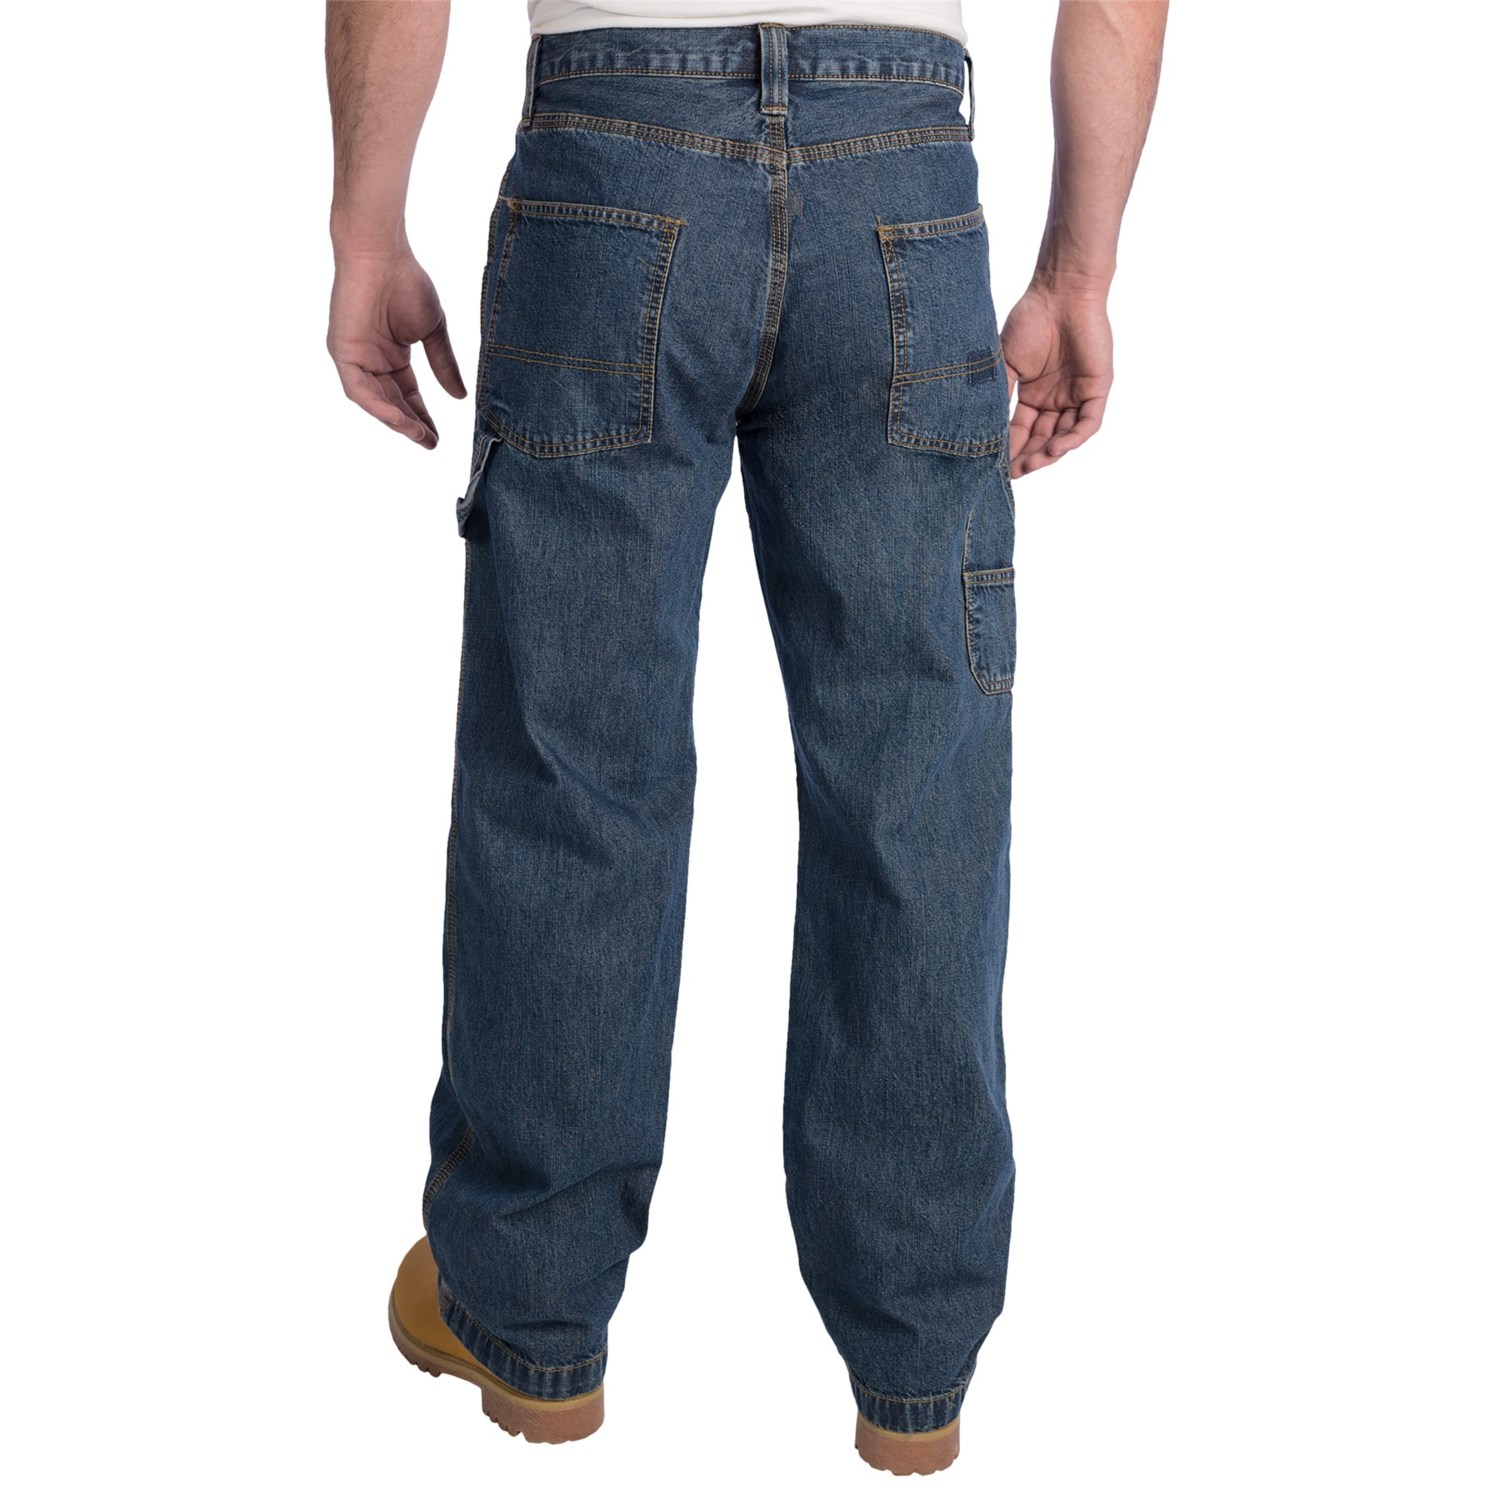 Carpenter Denim Jeans (For Men) 6832W - Save 56%